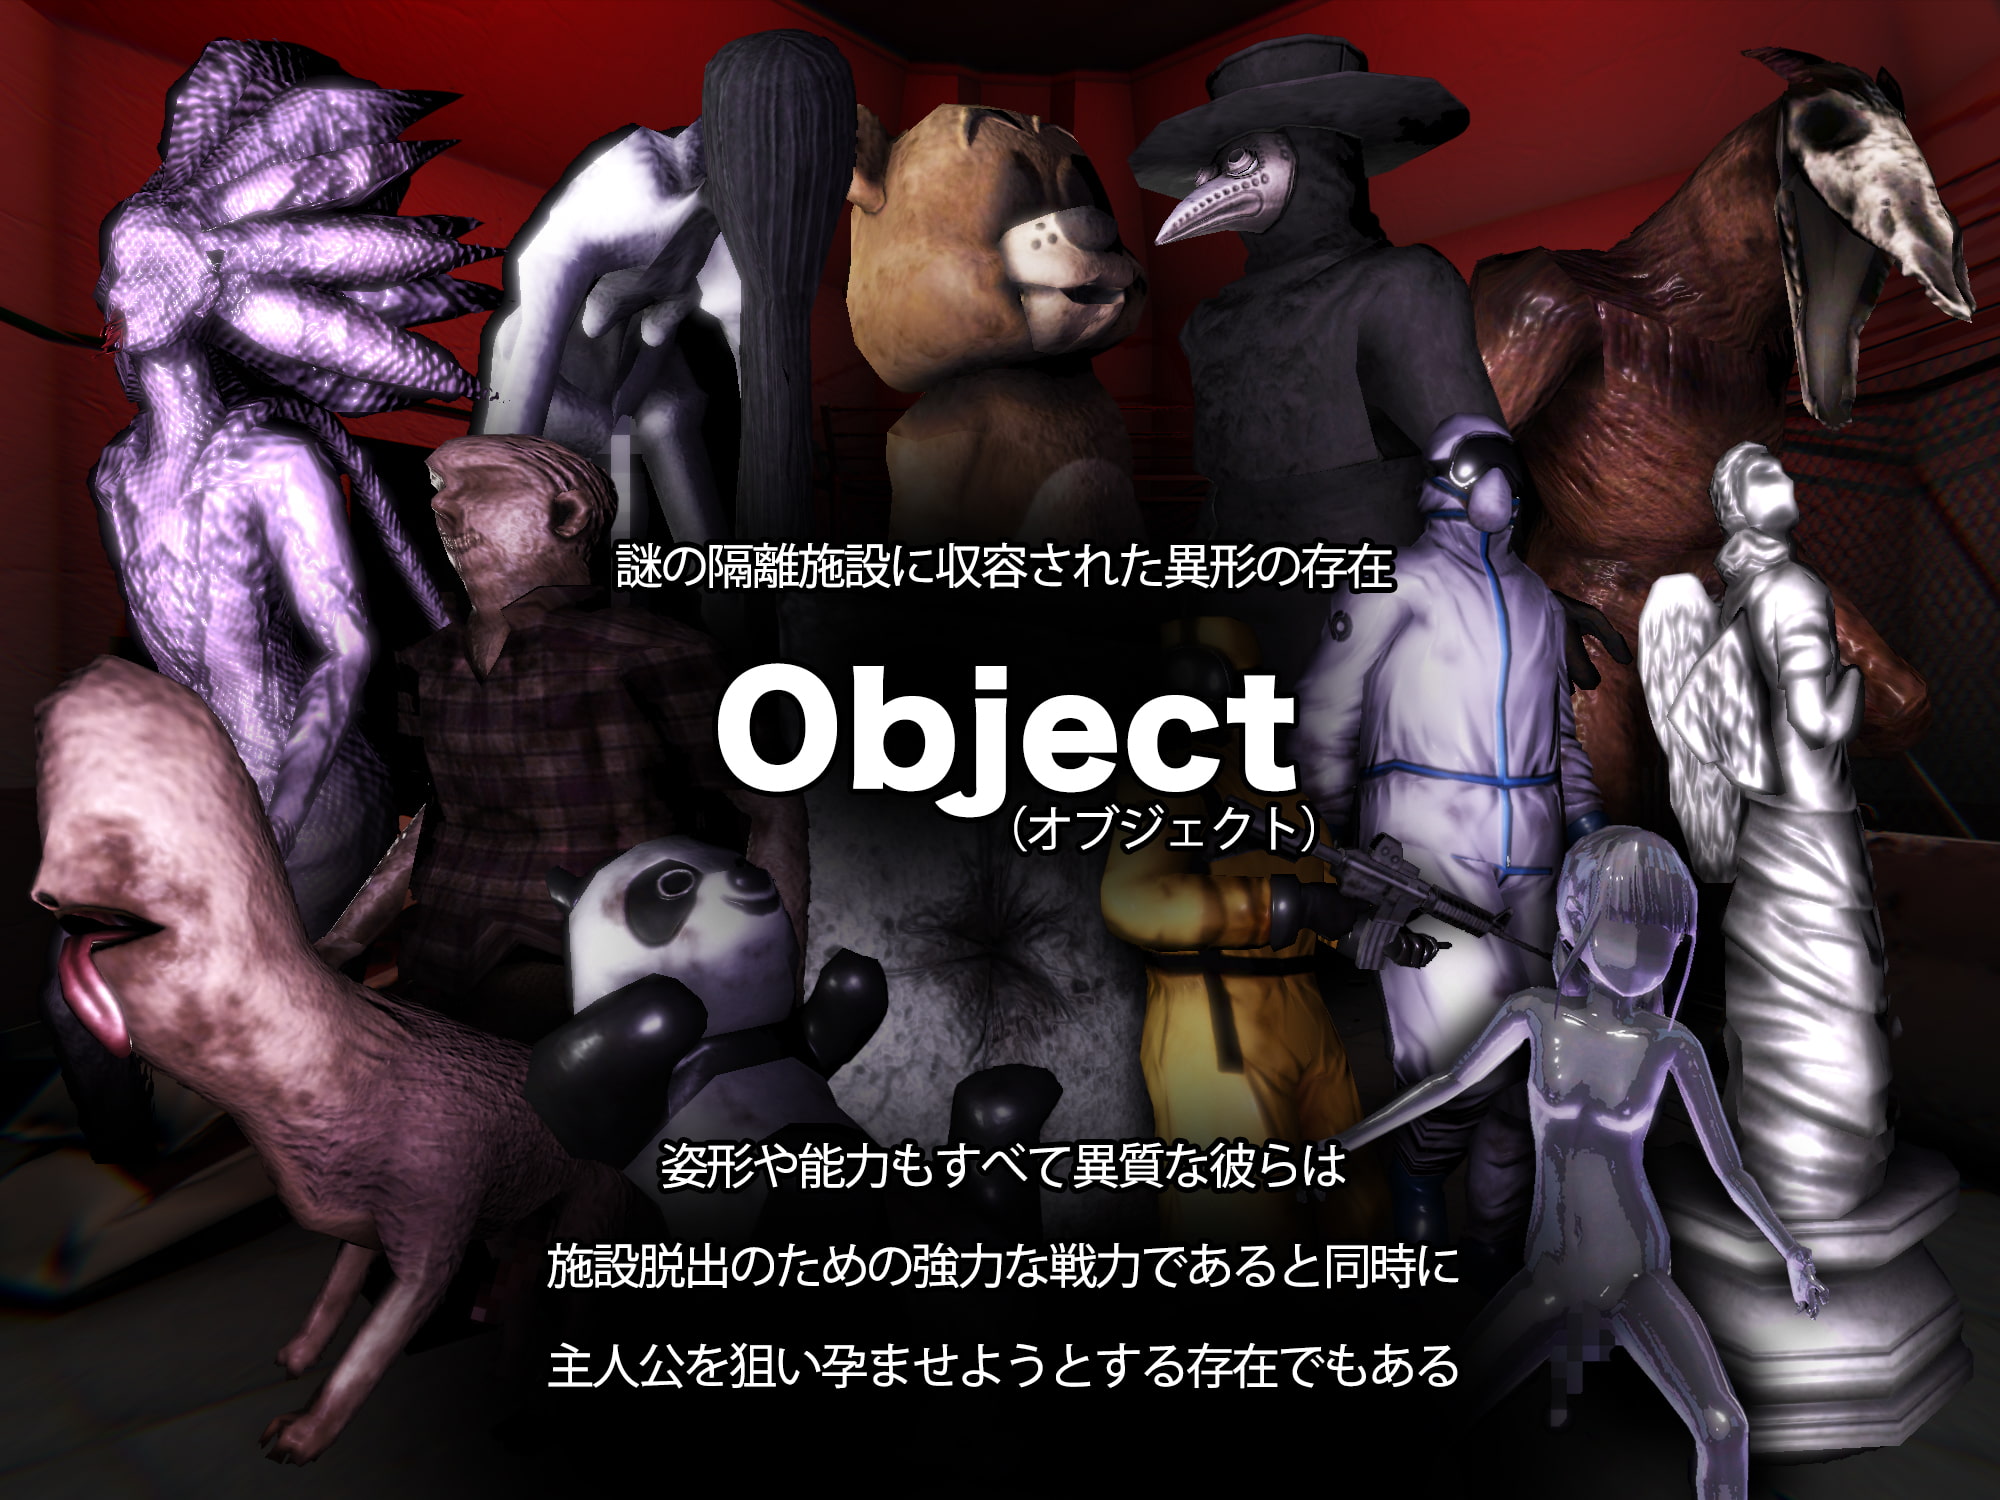 [mico] オブジェクトコントロール -Object Control- 謎の隔離施設に収容された存在(Object)から犯され出産し脱出を図るサバイバルアドベンチャー